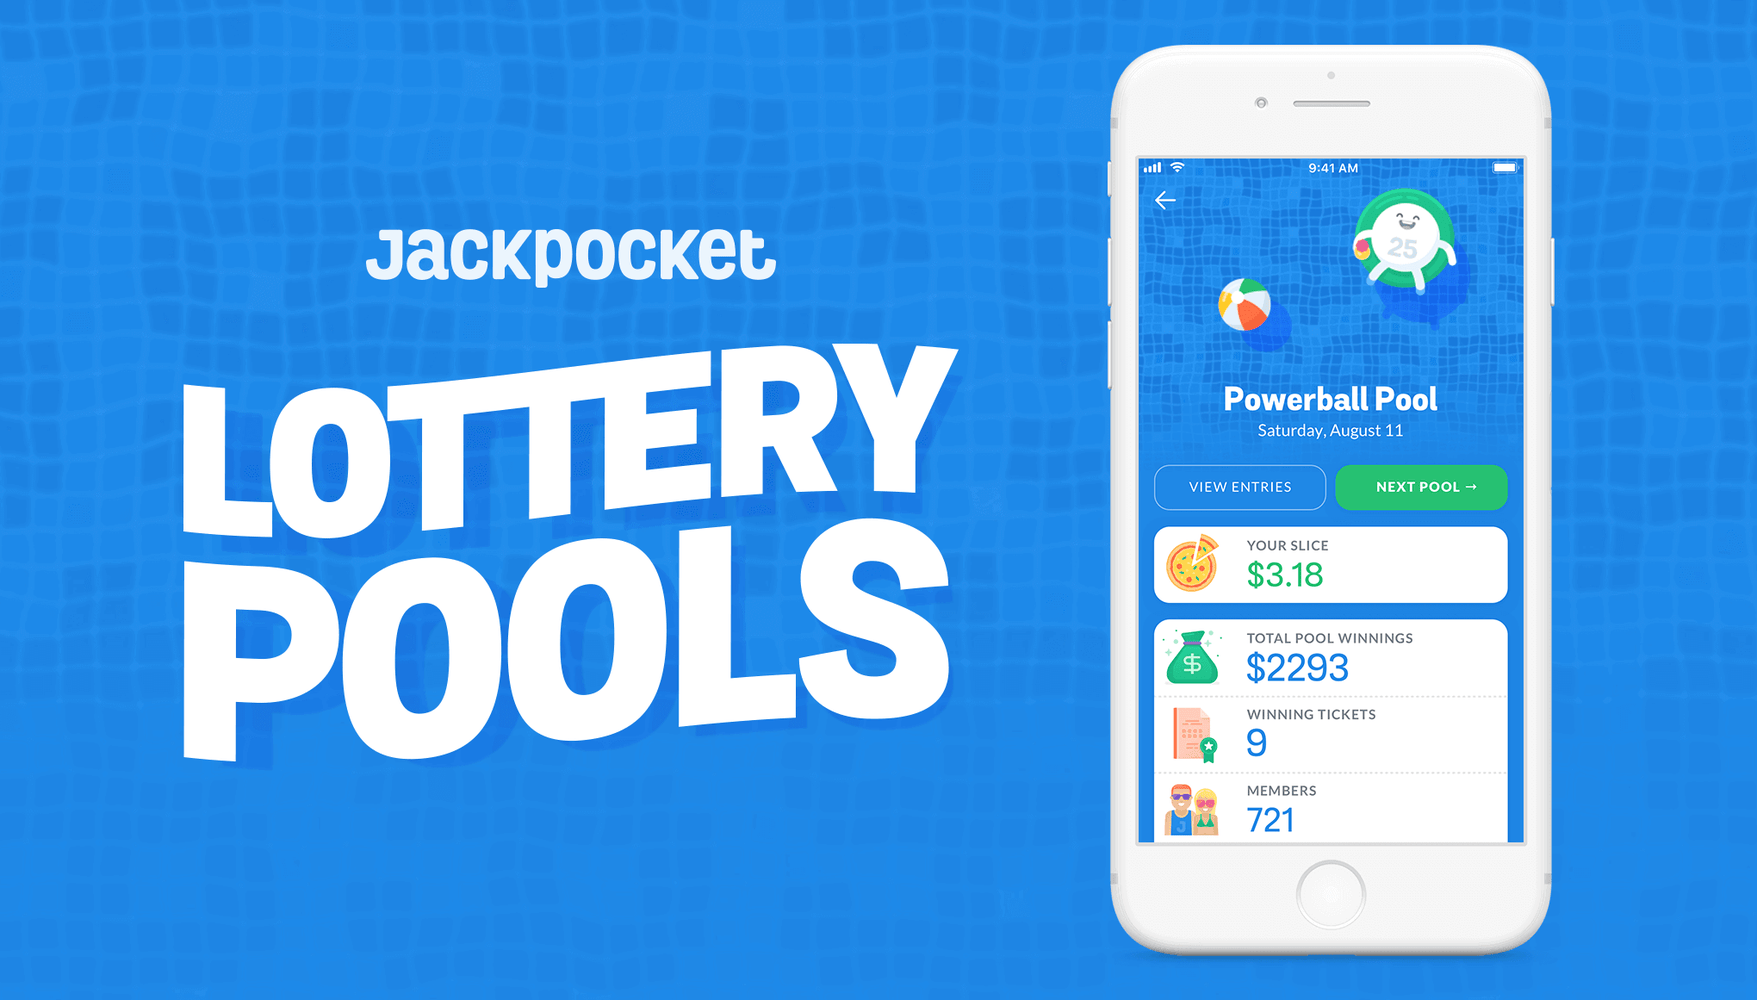 Jackpocket lottery pool app